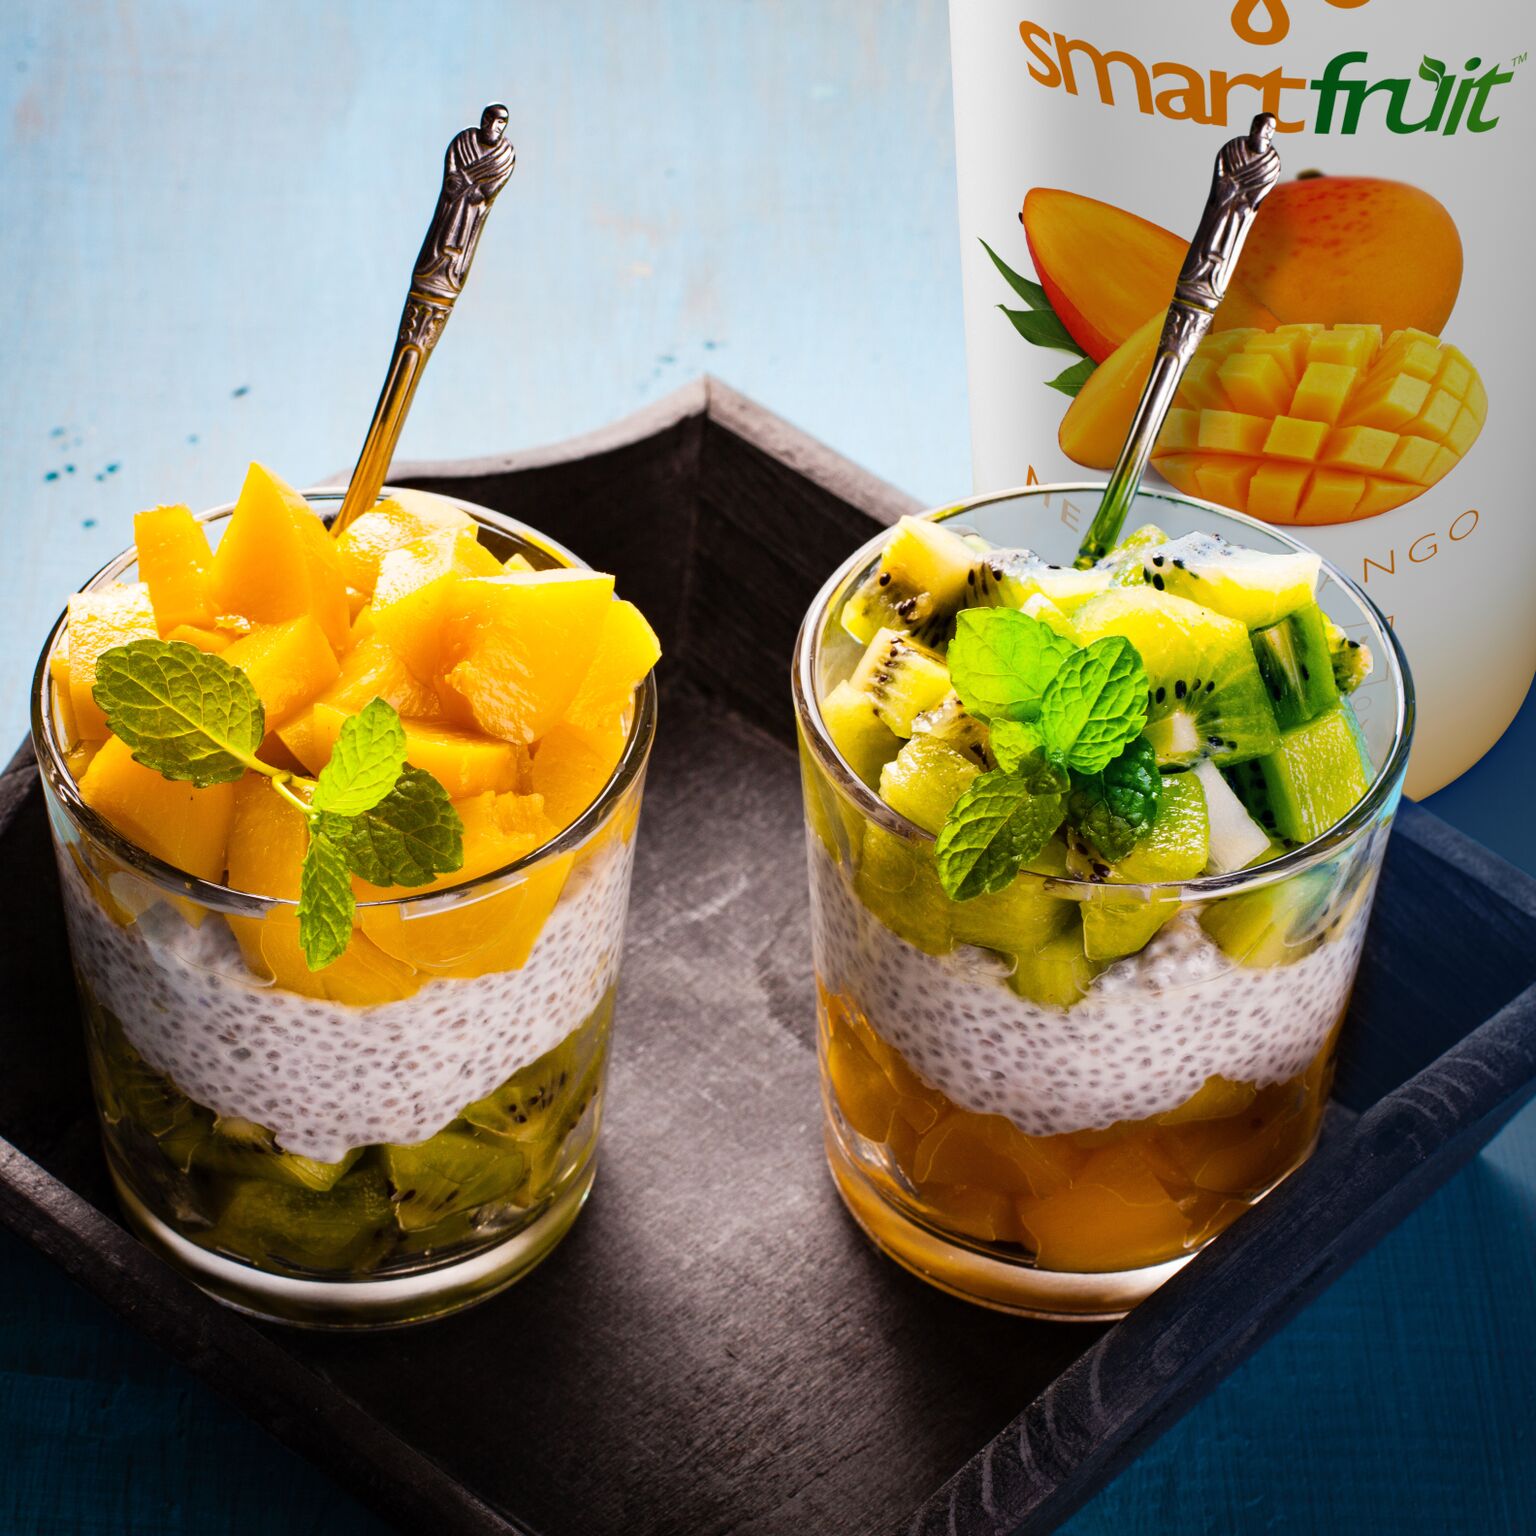 Kiwi and Mango Vegan Parfait Made with Smoothie Mix